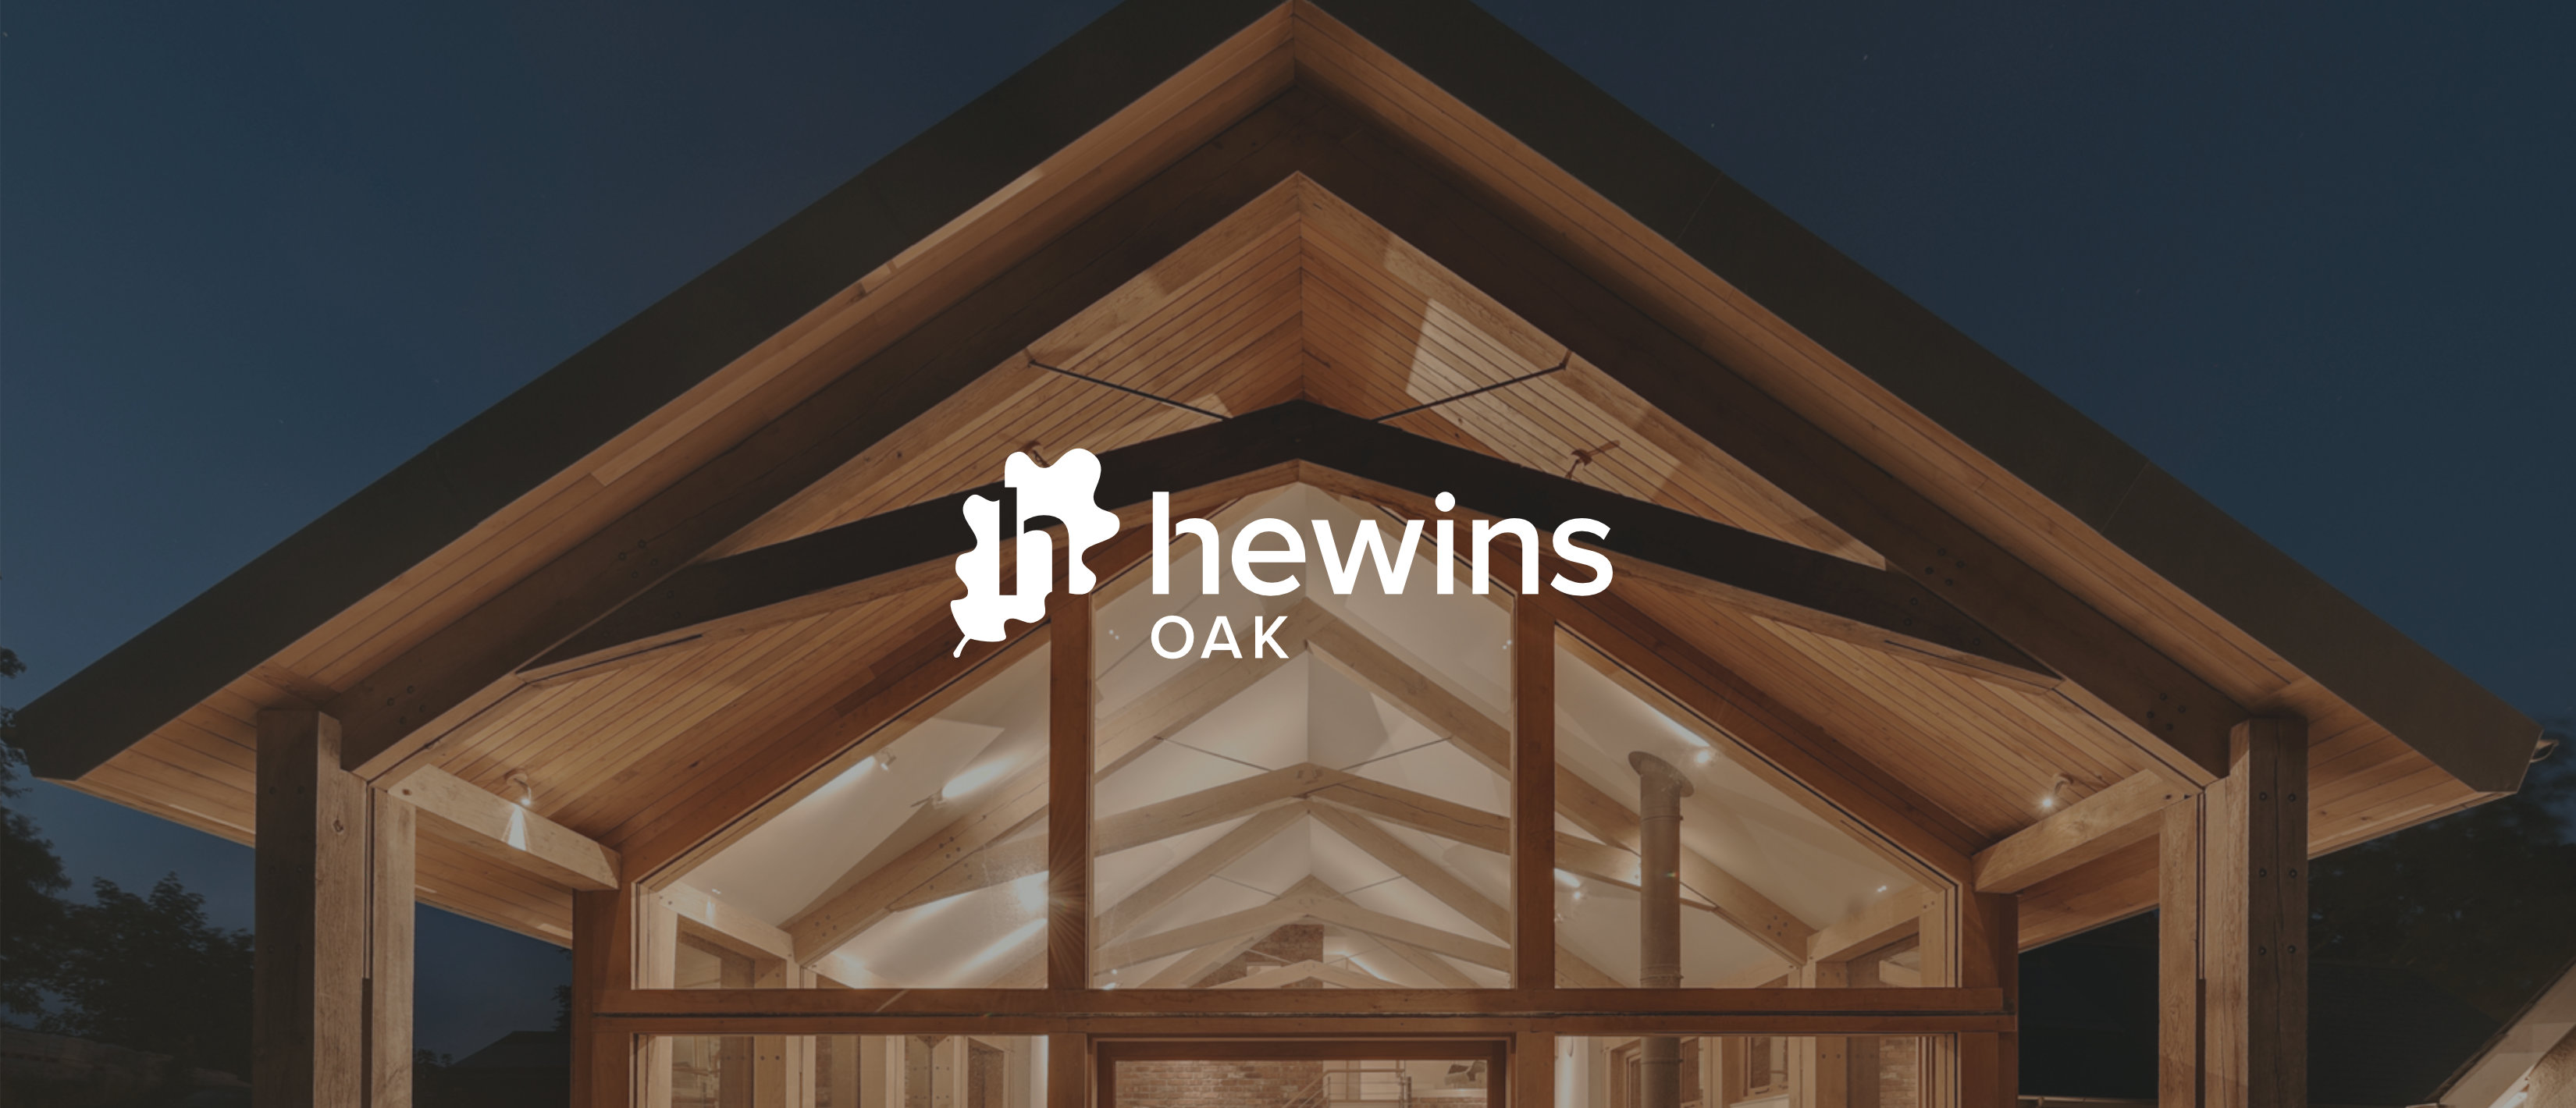 Hewins oak logo